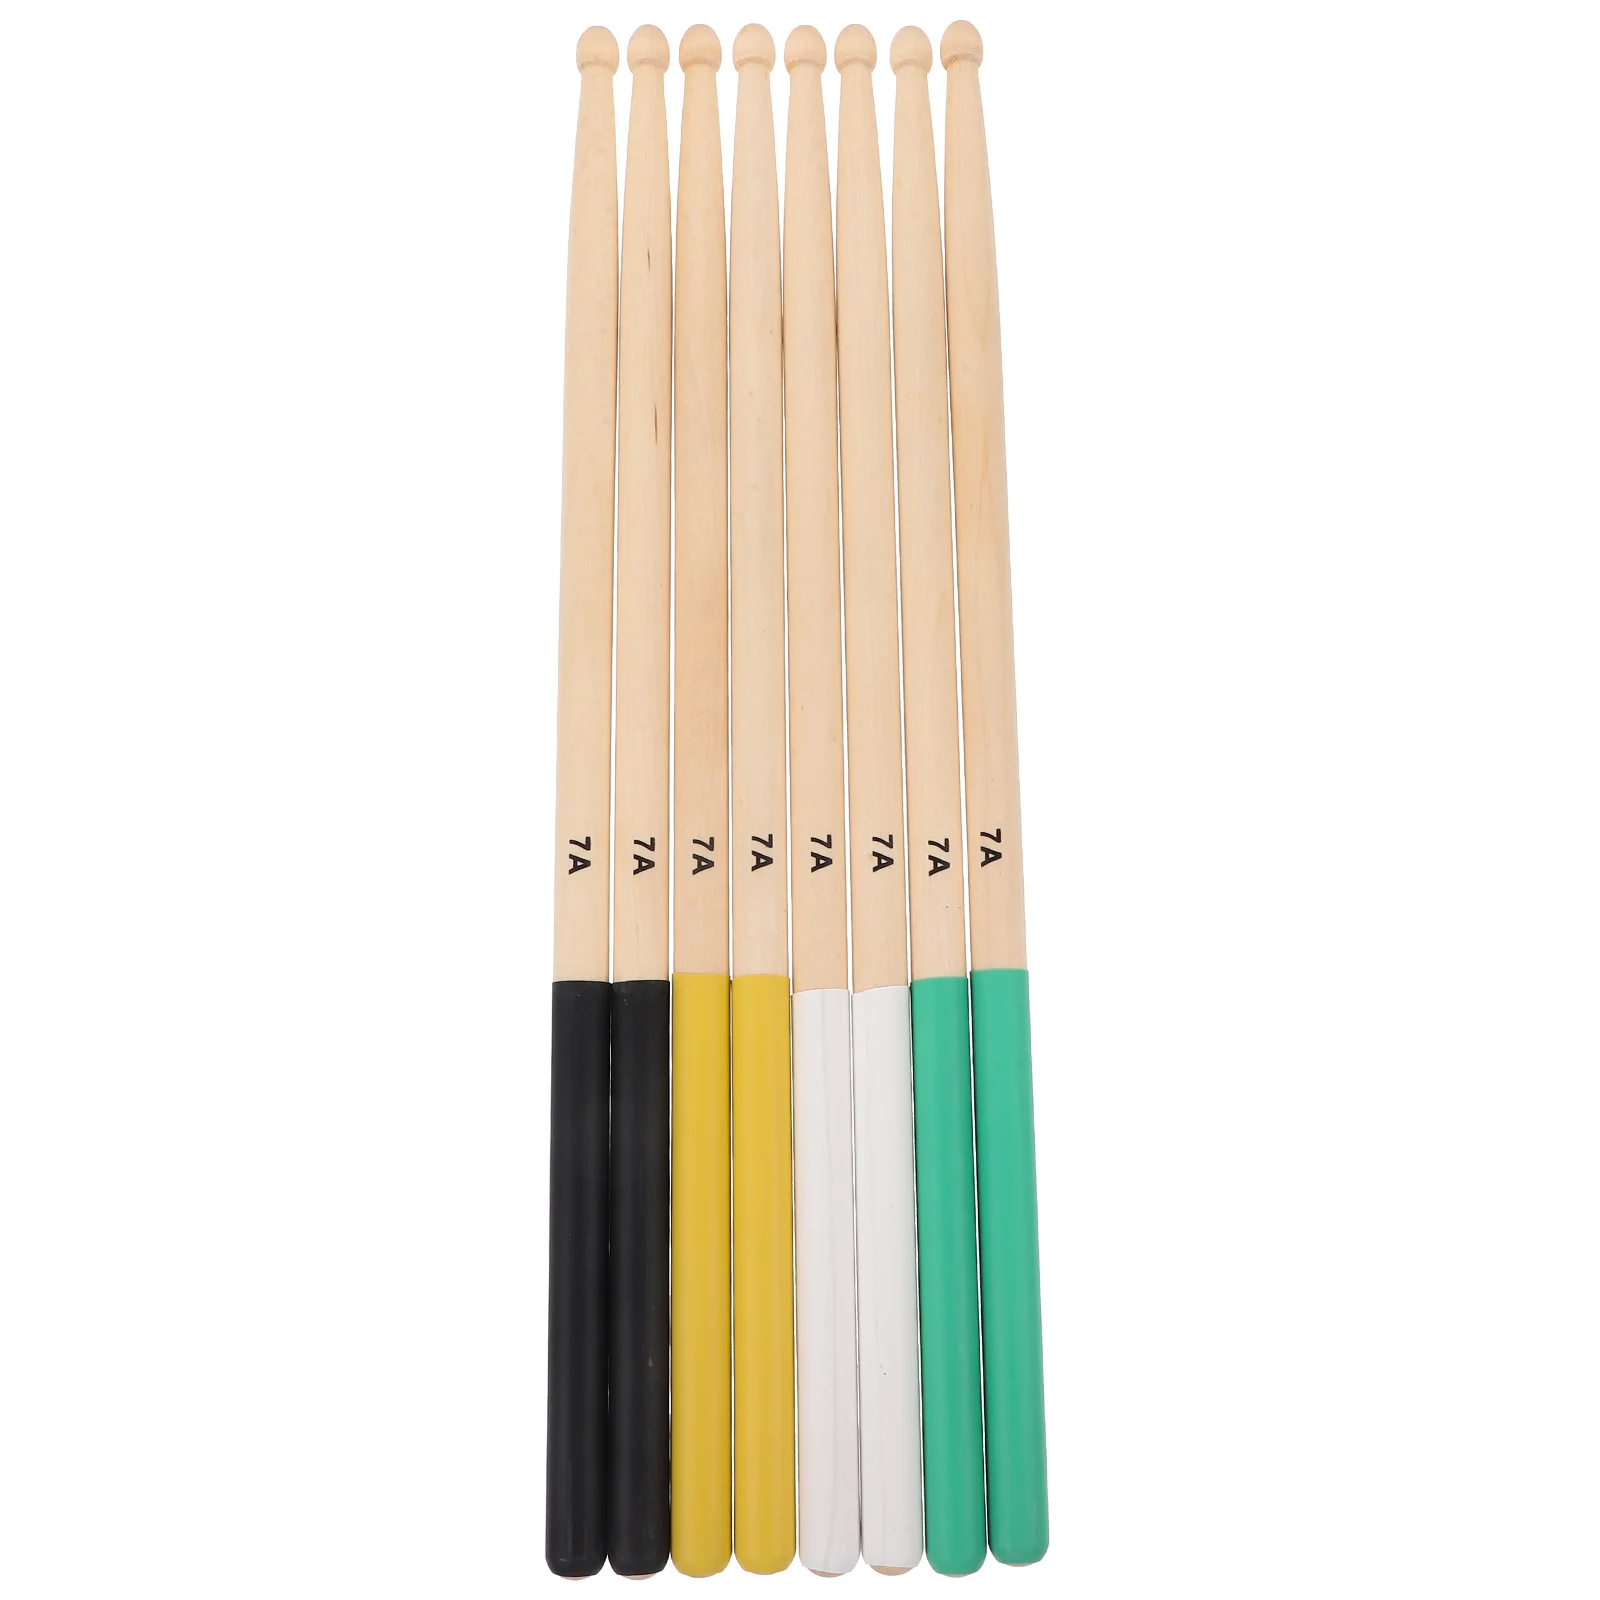 

Кленовые палочки, ударный барабанный набор, барабанные палочки для взрослых, деревянные палочки для практики